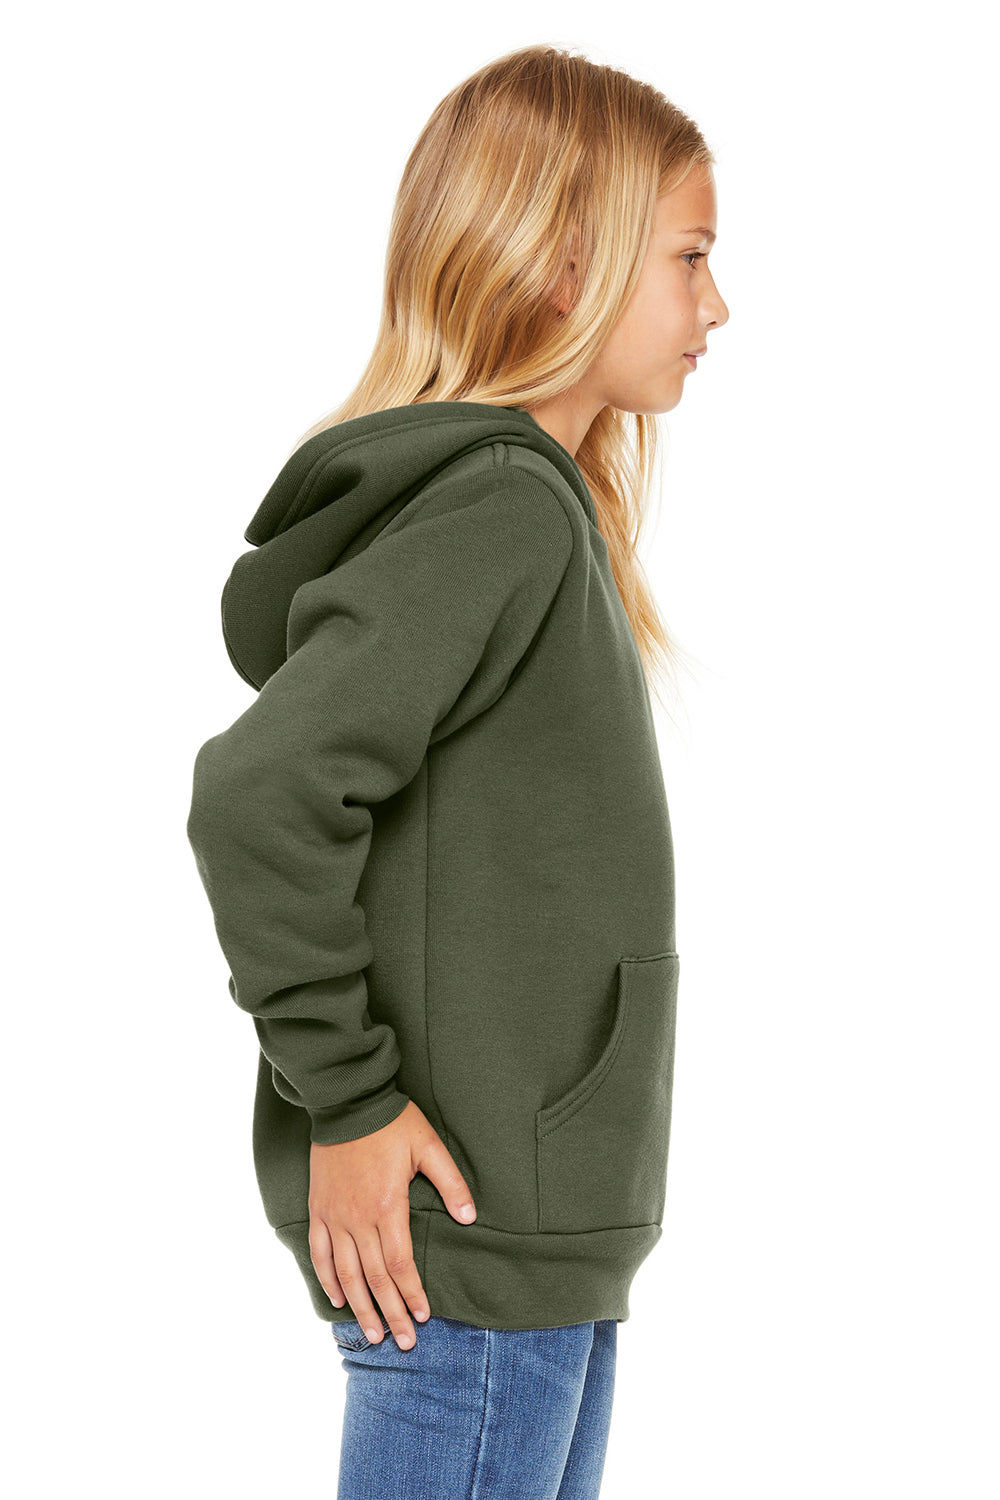 Bella + Canvas 3719Y/BC3719Y Youth Sponge Fleece Hooded Sweatshirt Hoodie Military Green Model Side